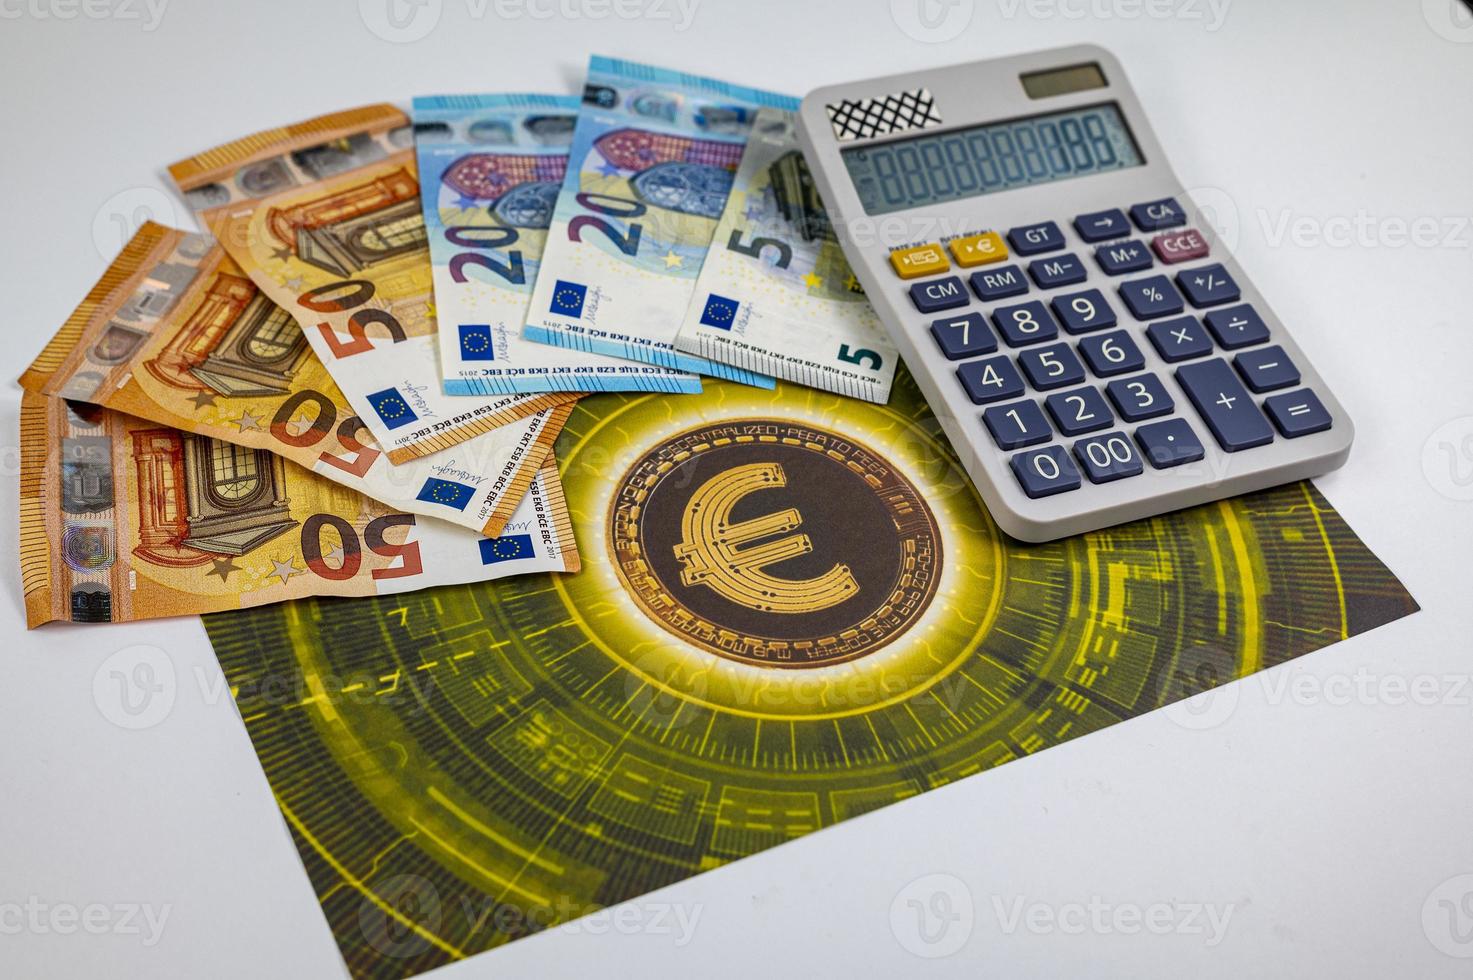 50 20 5 billets en euros avec le symbole de l'euro photo